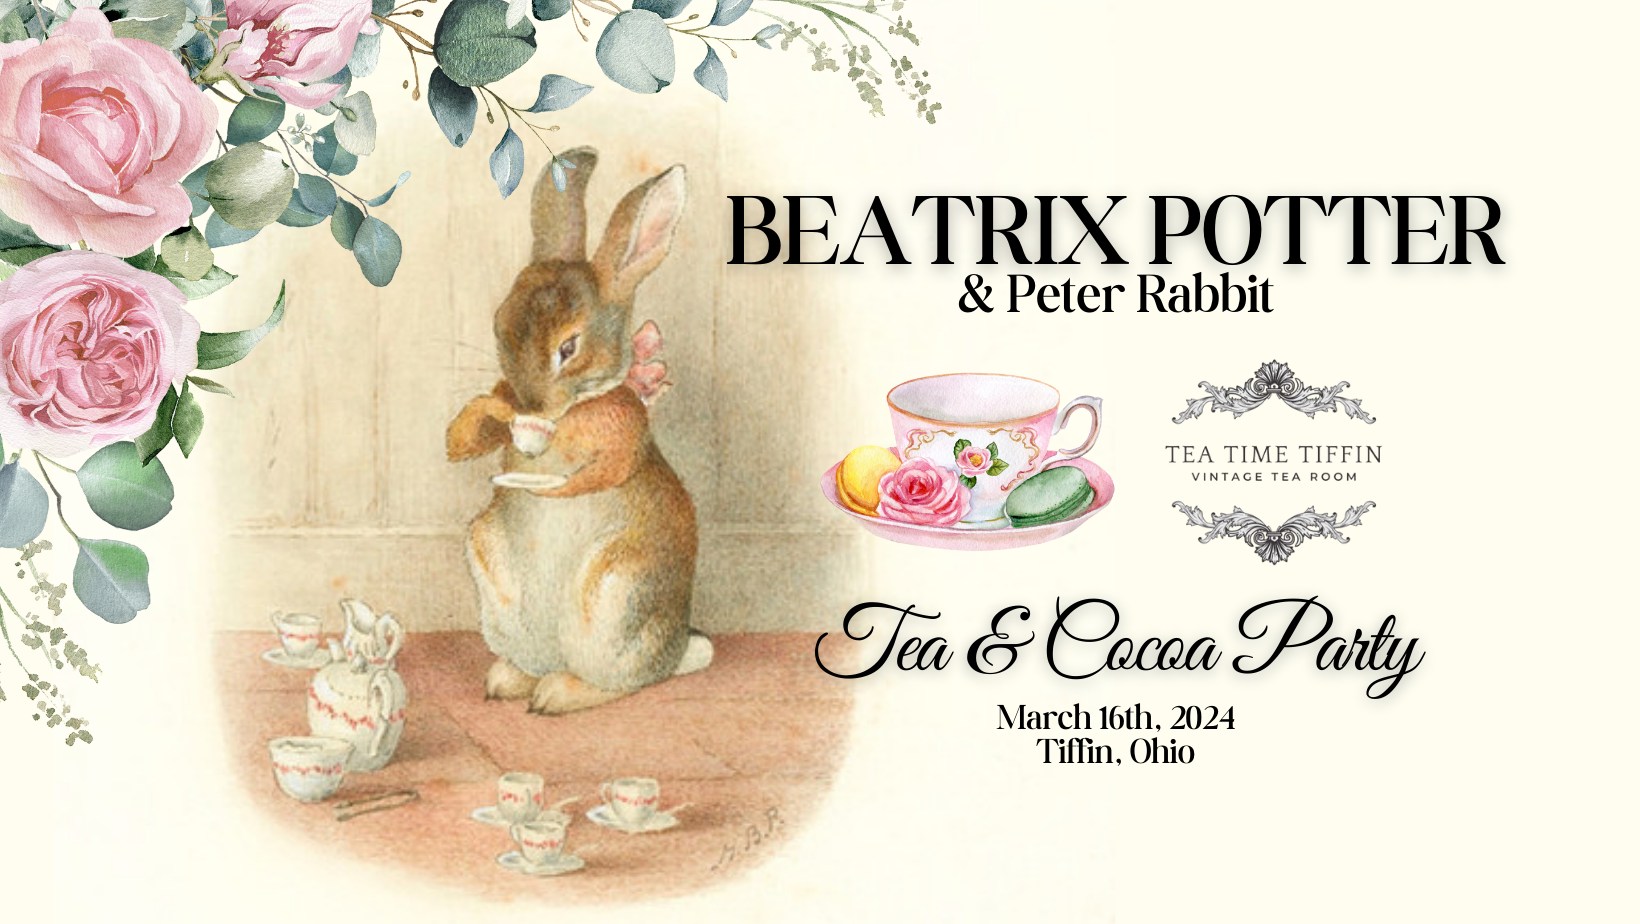 Beatrix Potter and Peter Rabbit Tea & Cocoa Party